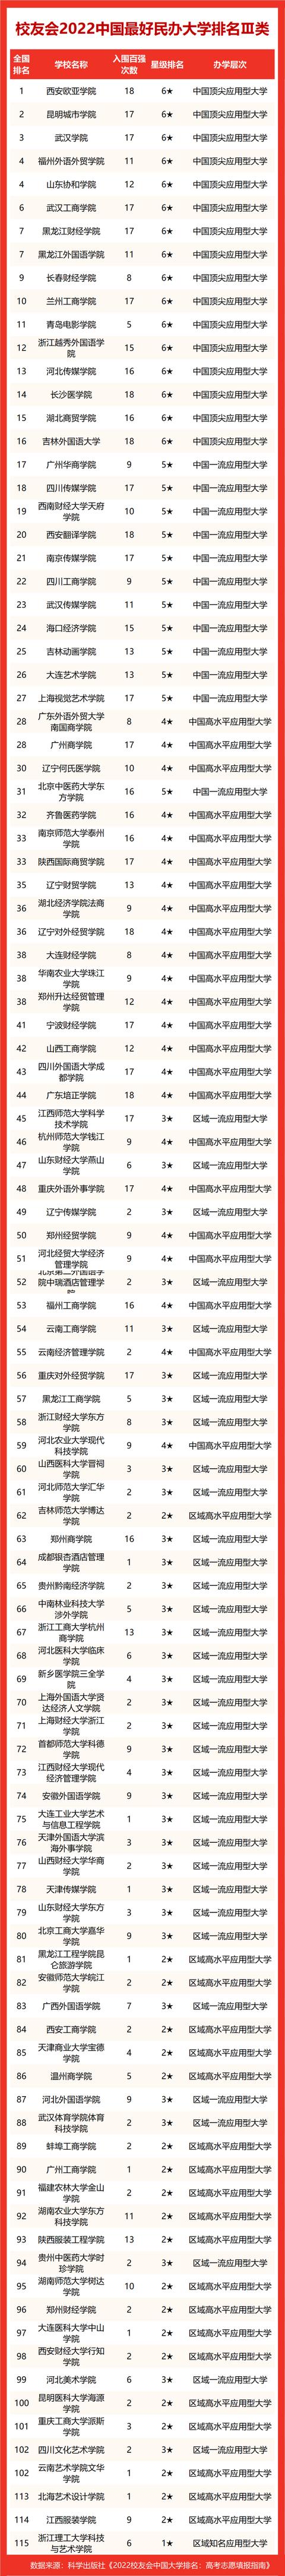 黑龙江省大学排名最新排名(黑龙江大学排名前50名)